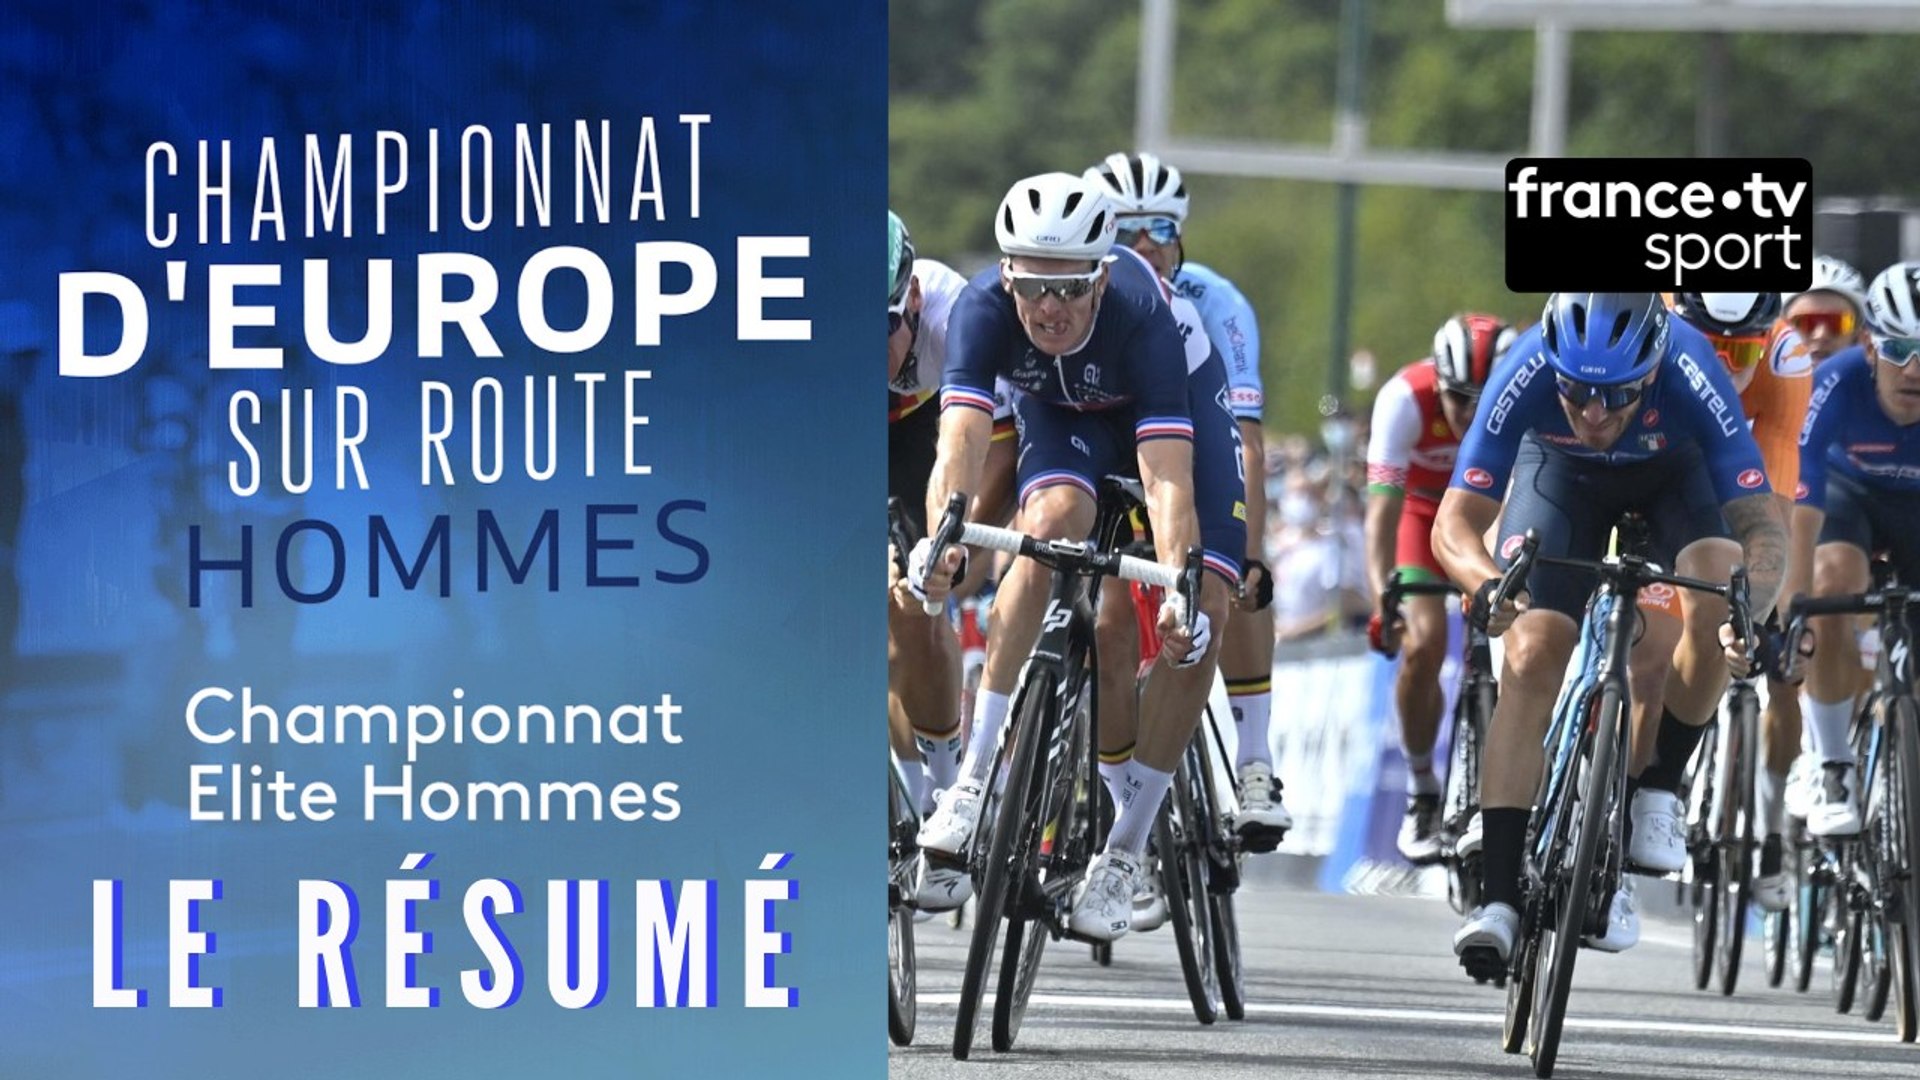 Championnats d'Europe de cyclisme : le résumé de la course hommes - Vidéo  Dailymotion